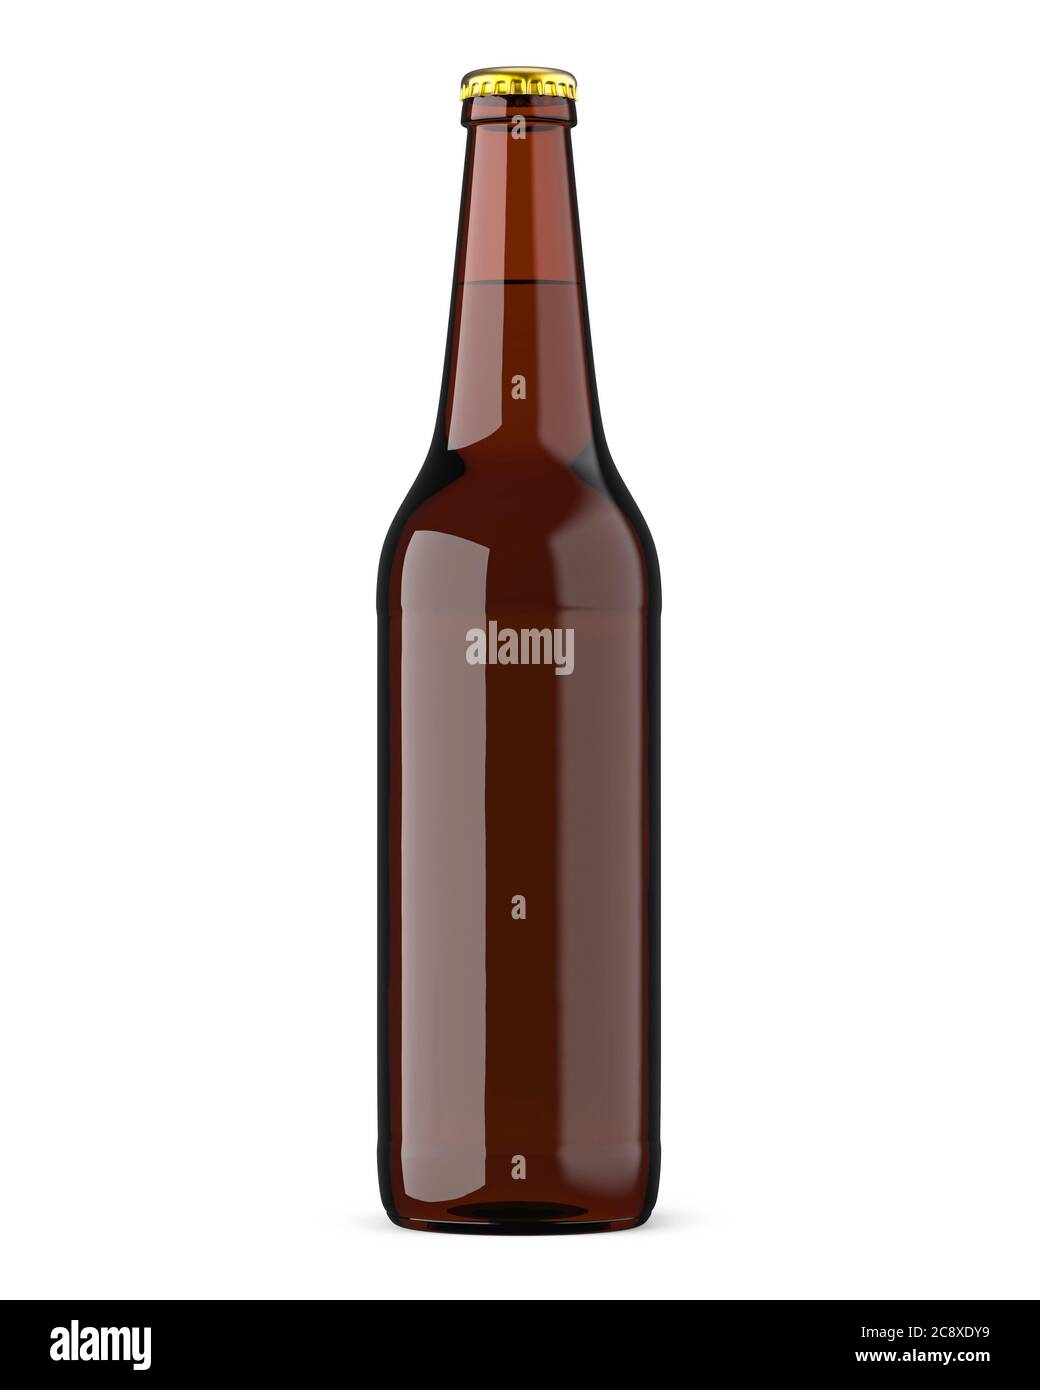 Braune Flasche mit Bier mit goldenem Deckel. 3D-Rendering, isoliert auf  weißem Hintergrund Stockfotografie - Alamy